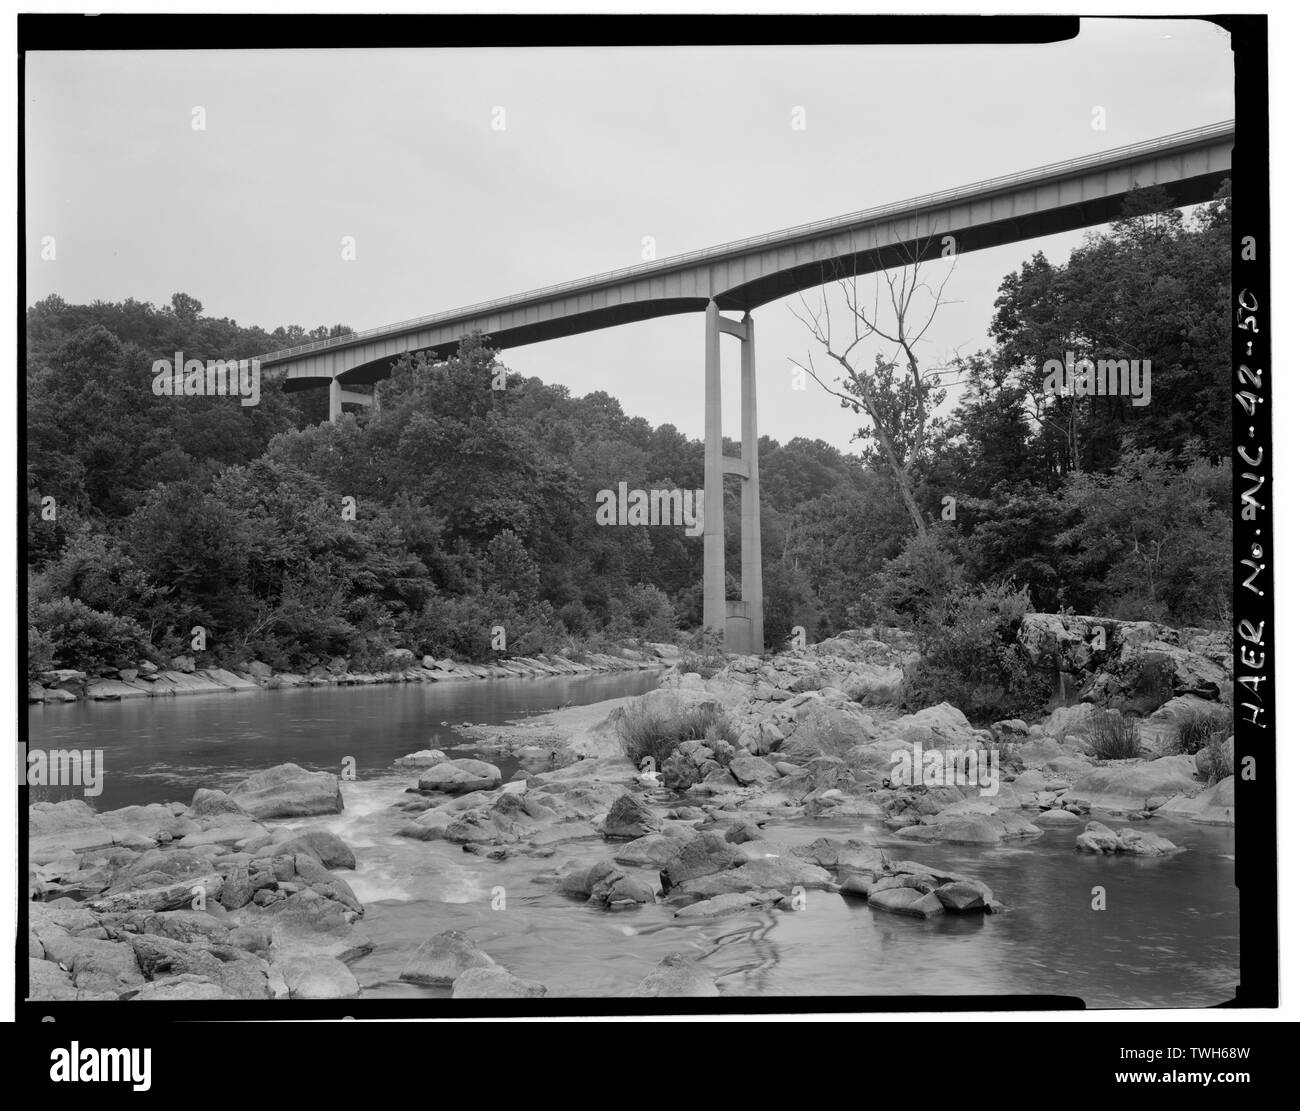 Roanoke River Bridge. Ce 1 028 6 span, pont à poutres en acier, construit en 1963, est la plus longue de ce type sur la route. Cette vue est de son élévation ouest. - Blue Ridge Parkway, Shenandoah National Park et entre les montagnes Great Smoky, Asheville, NC, Buncombe Comté Banque D'Images